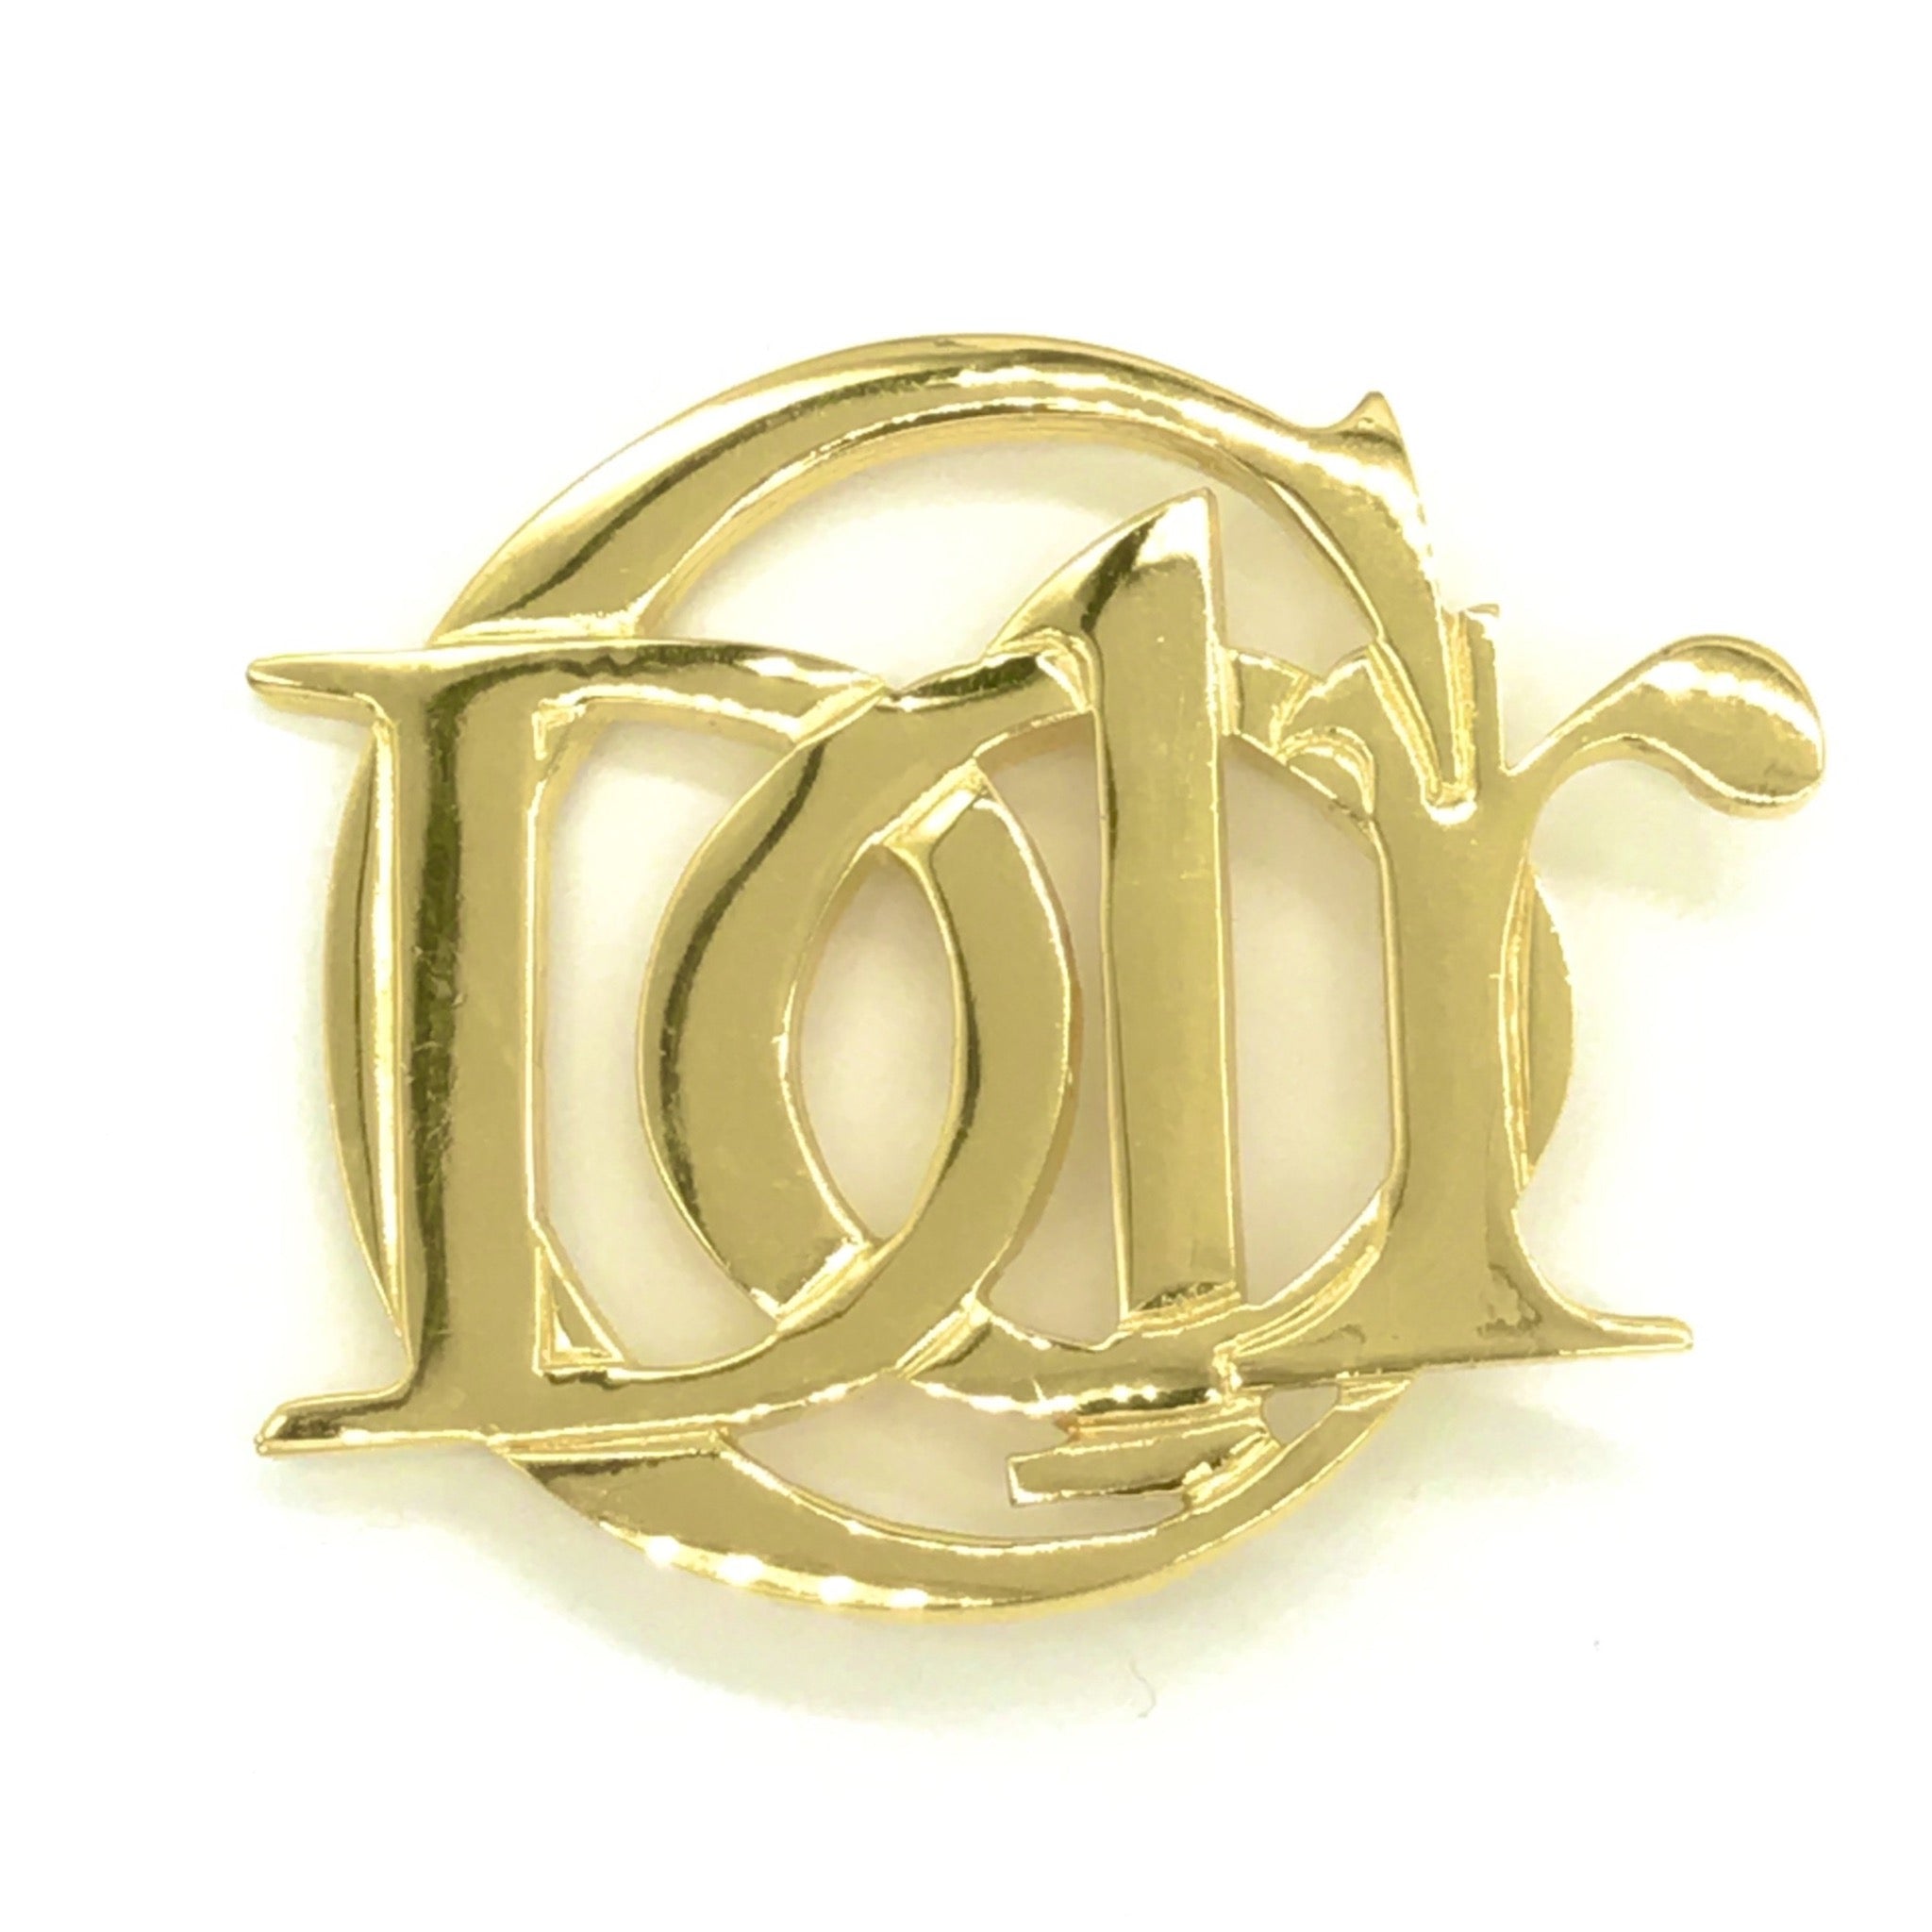 Vintage Christian Dior Logo Letters 